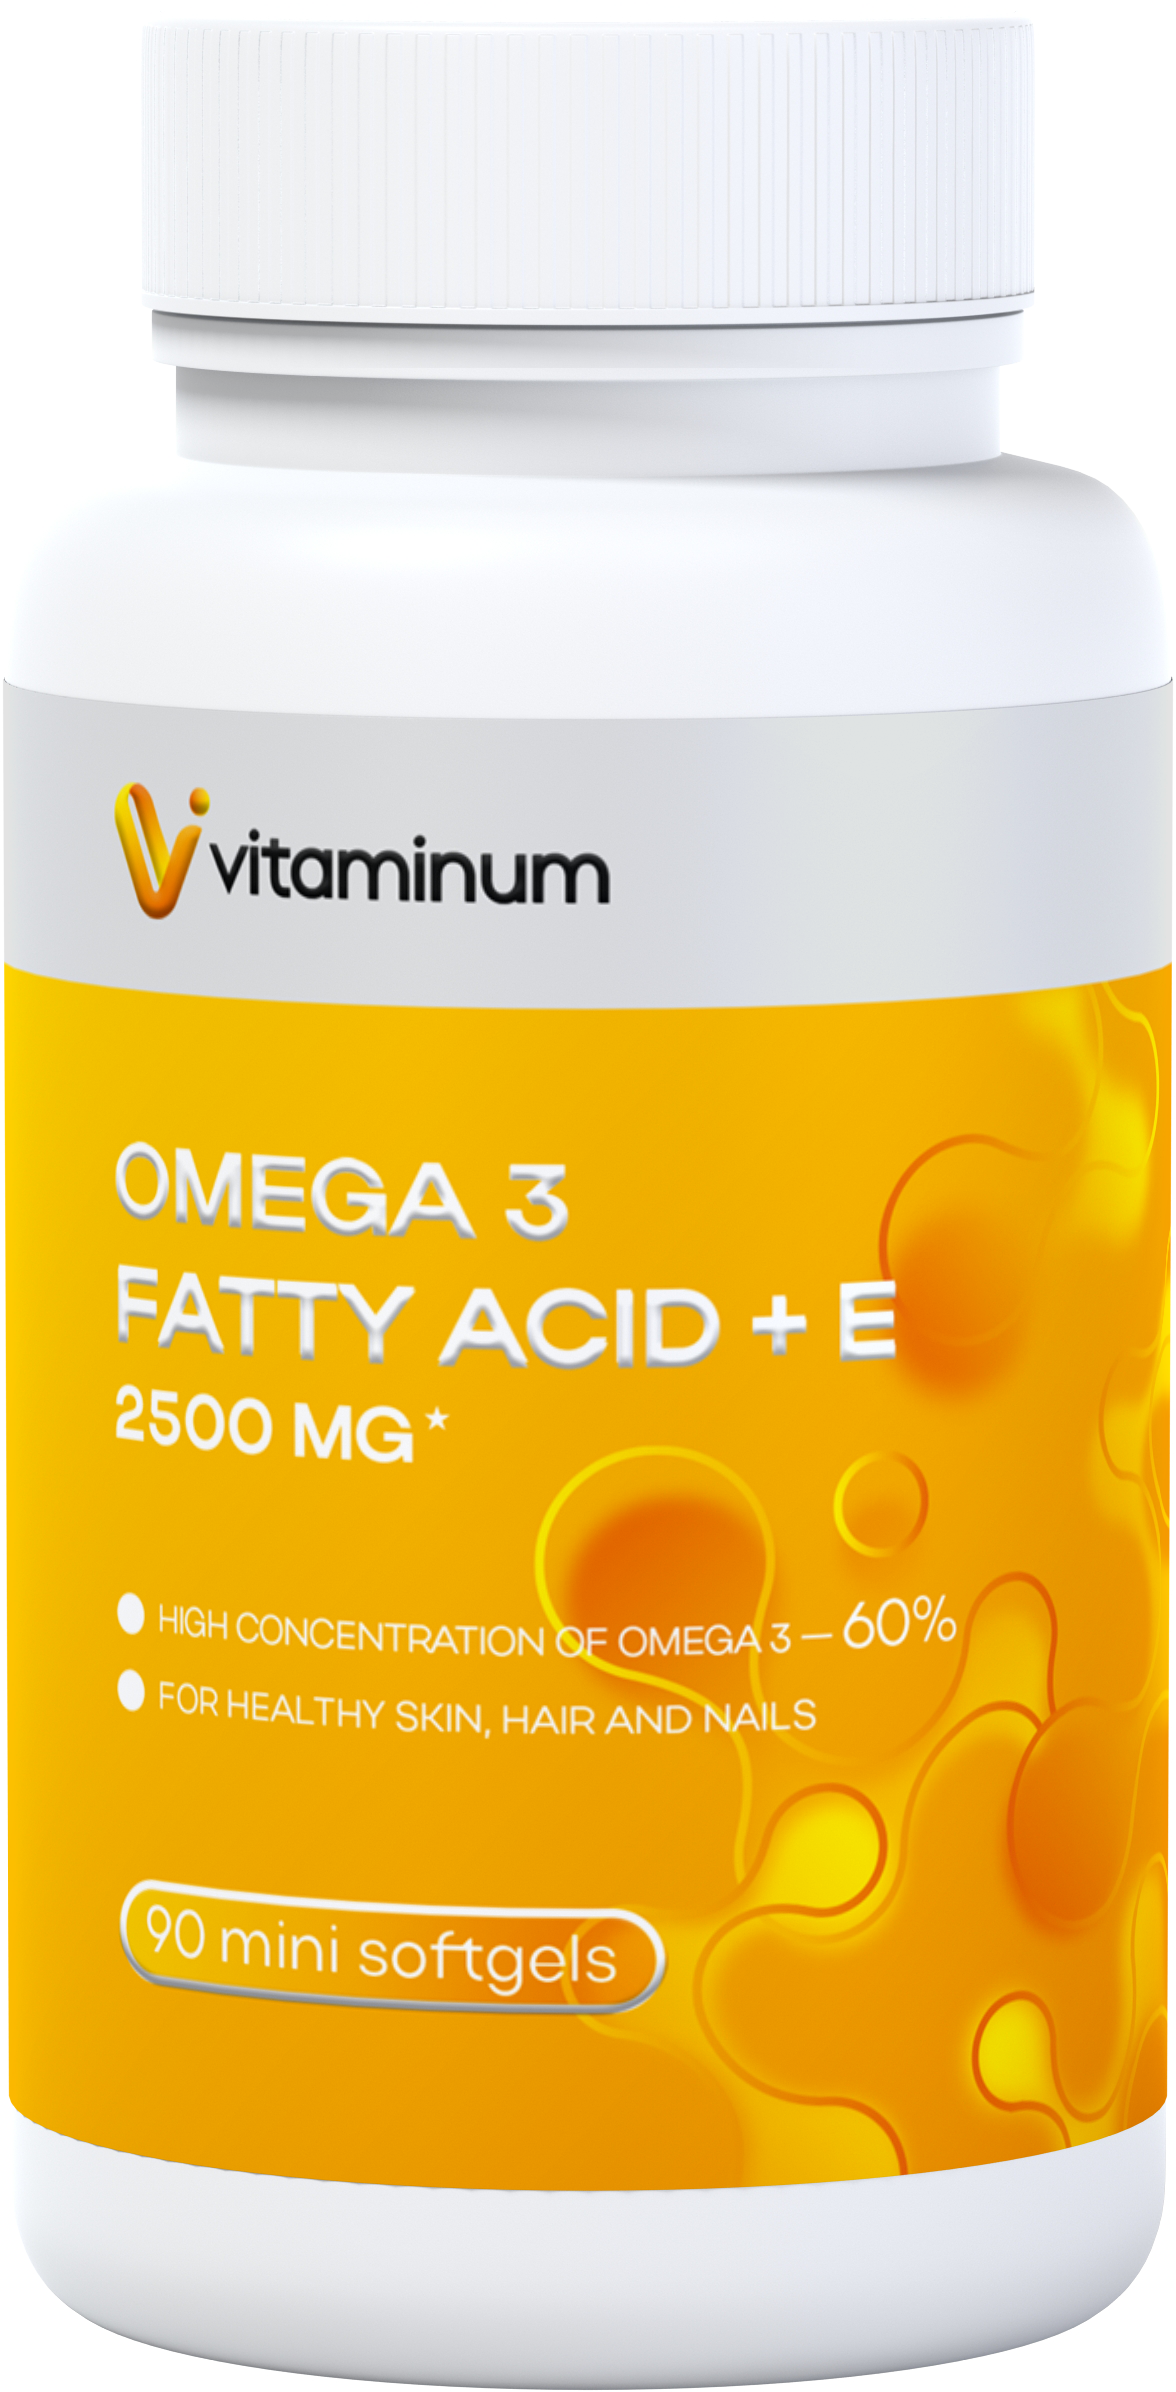  Vitaminum ОМЕГА 3 60% + витамин Е (2500 MG*) 90 капсул 700 мг   в Дальнегорске